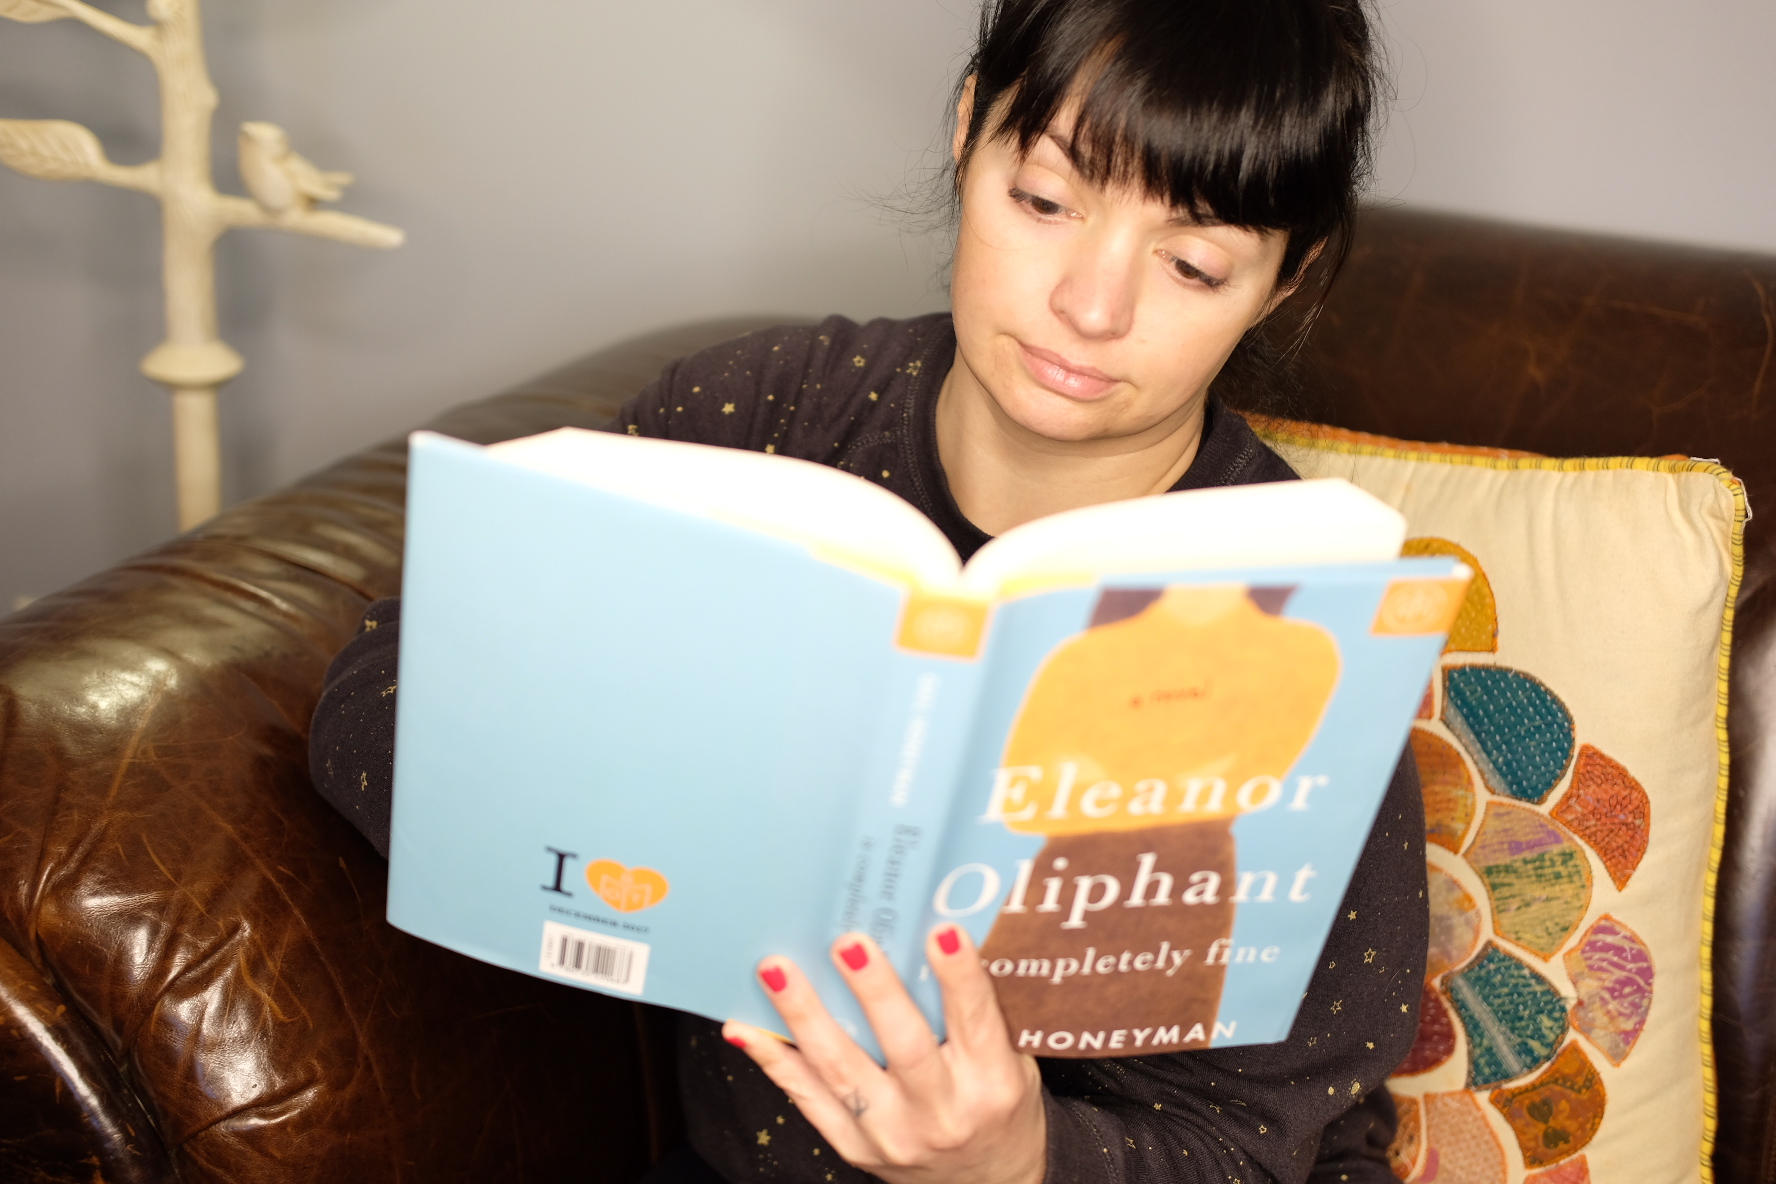 emily reading eleanor oliphant